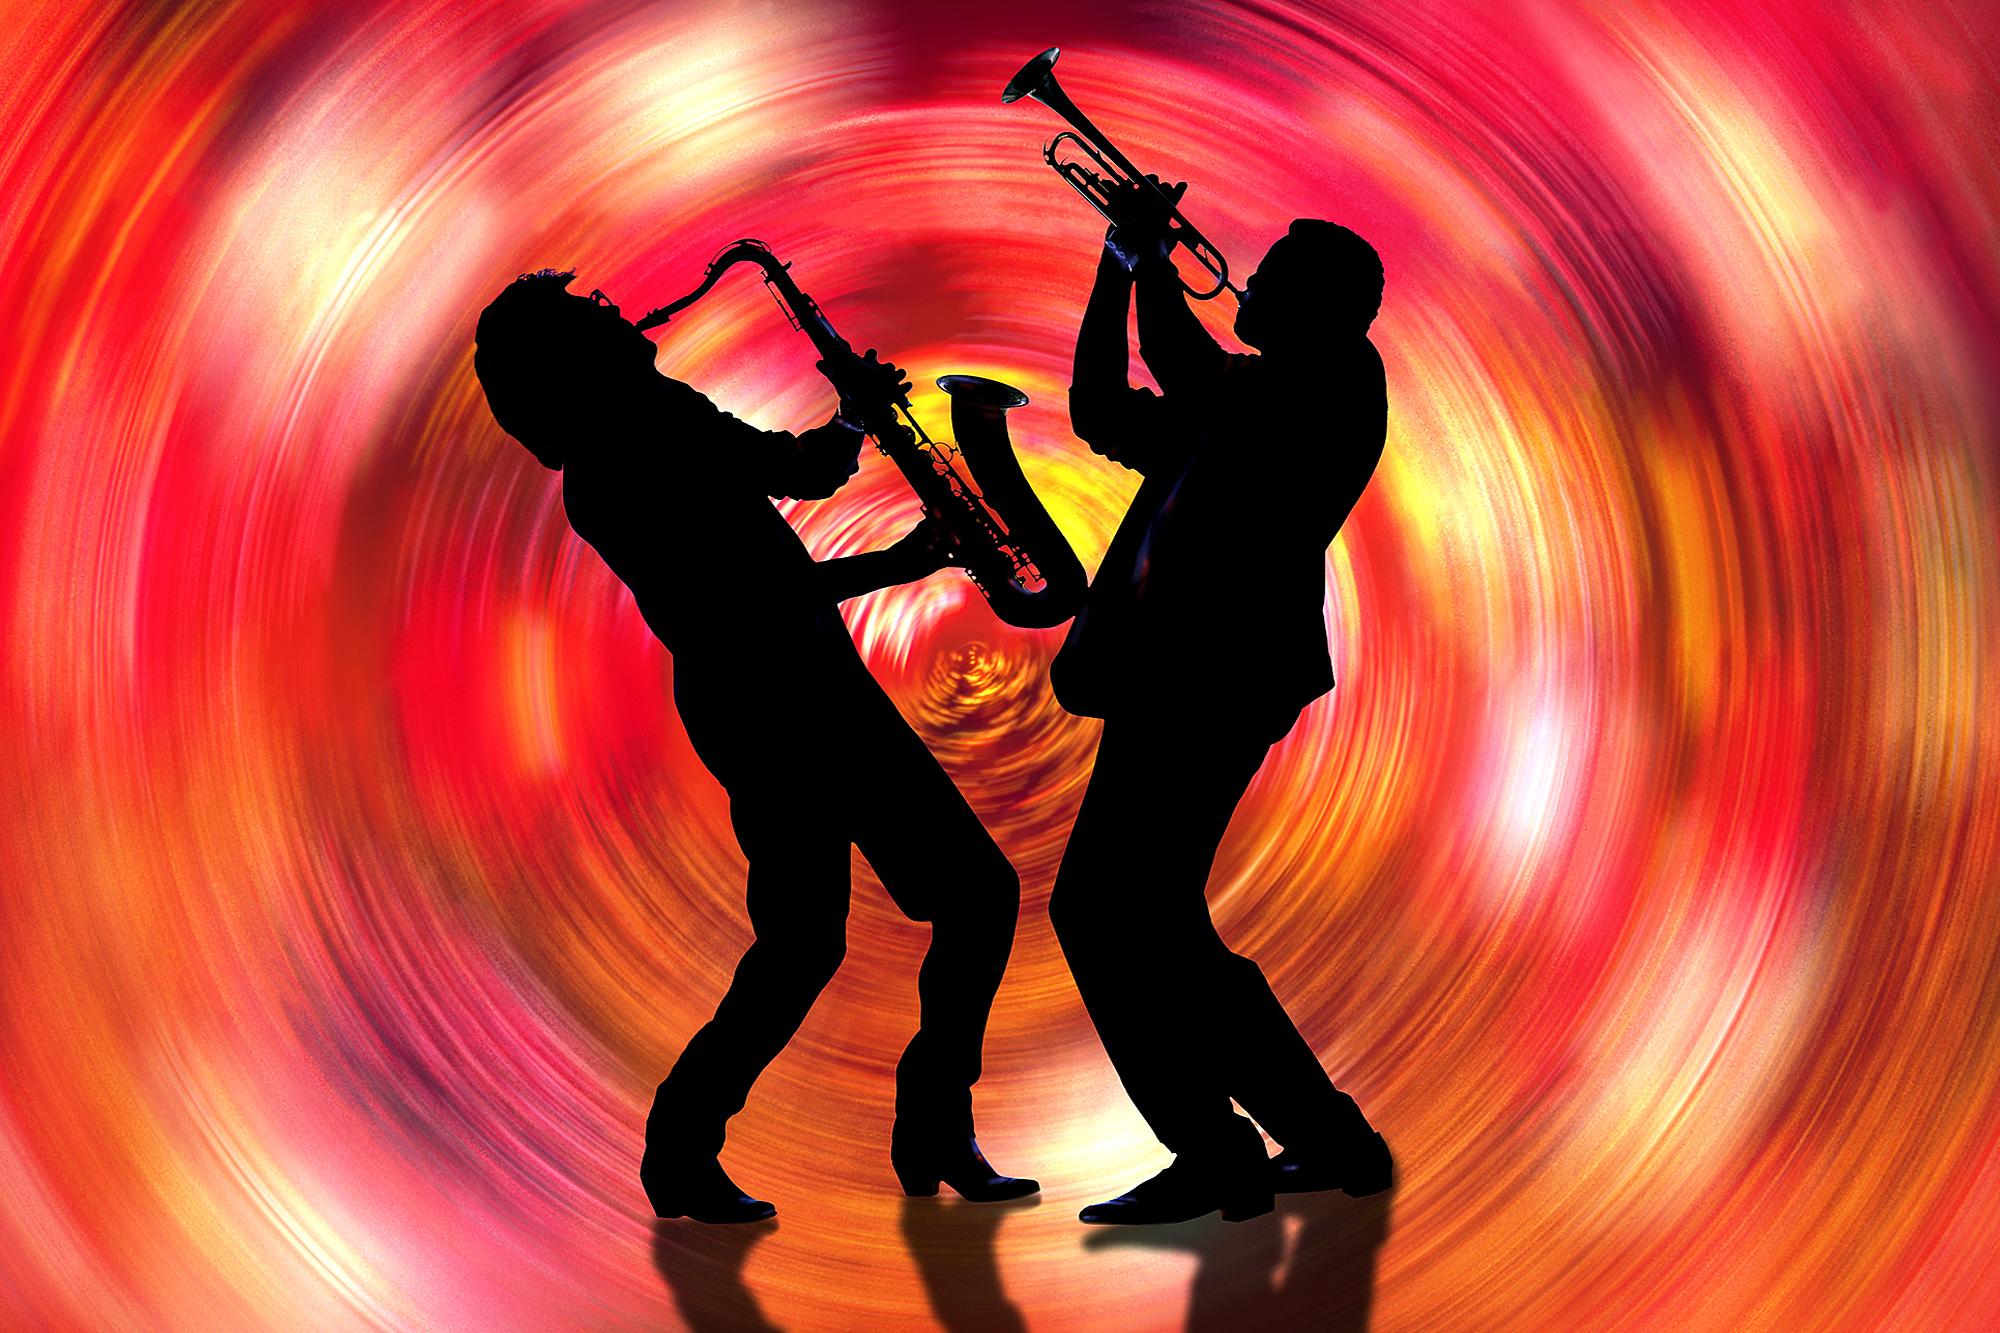 Jazzmusiker Saxophone und Trompetenwirbel in rotem Wirbel  - Musik ist Farbe